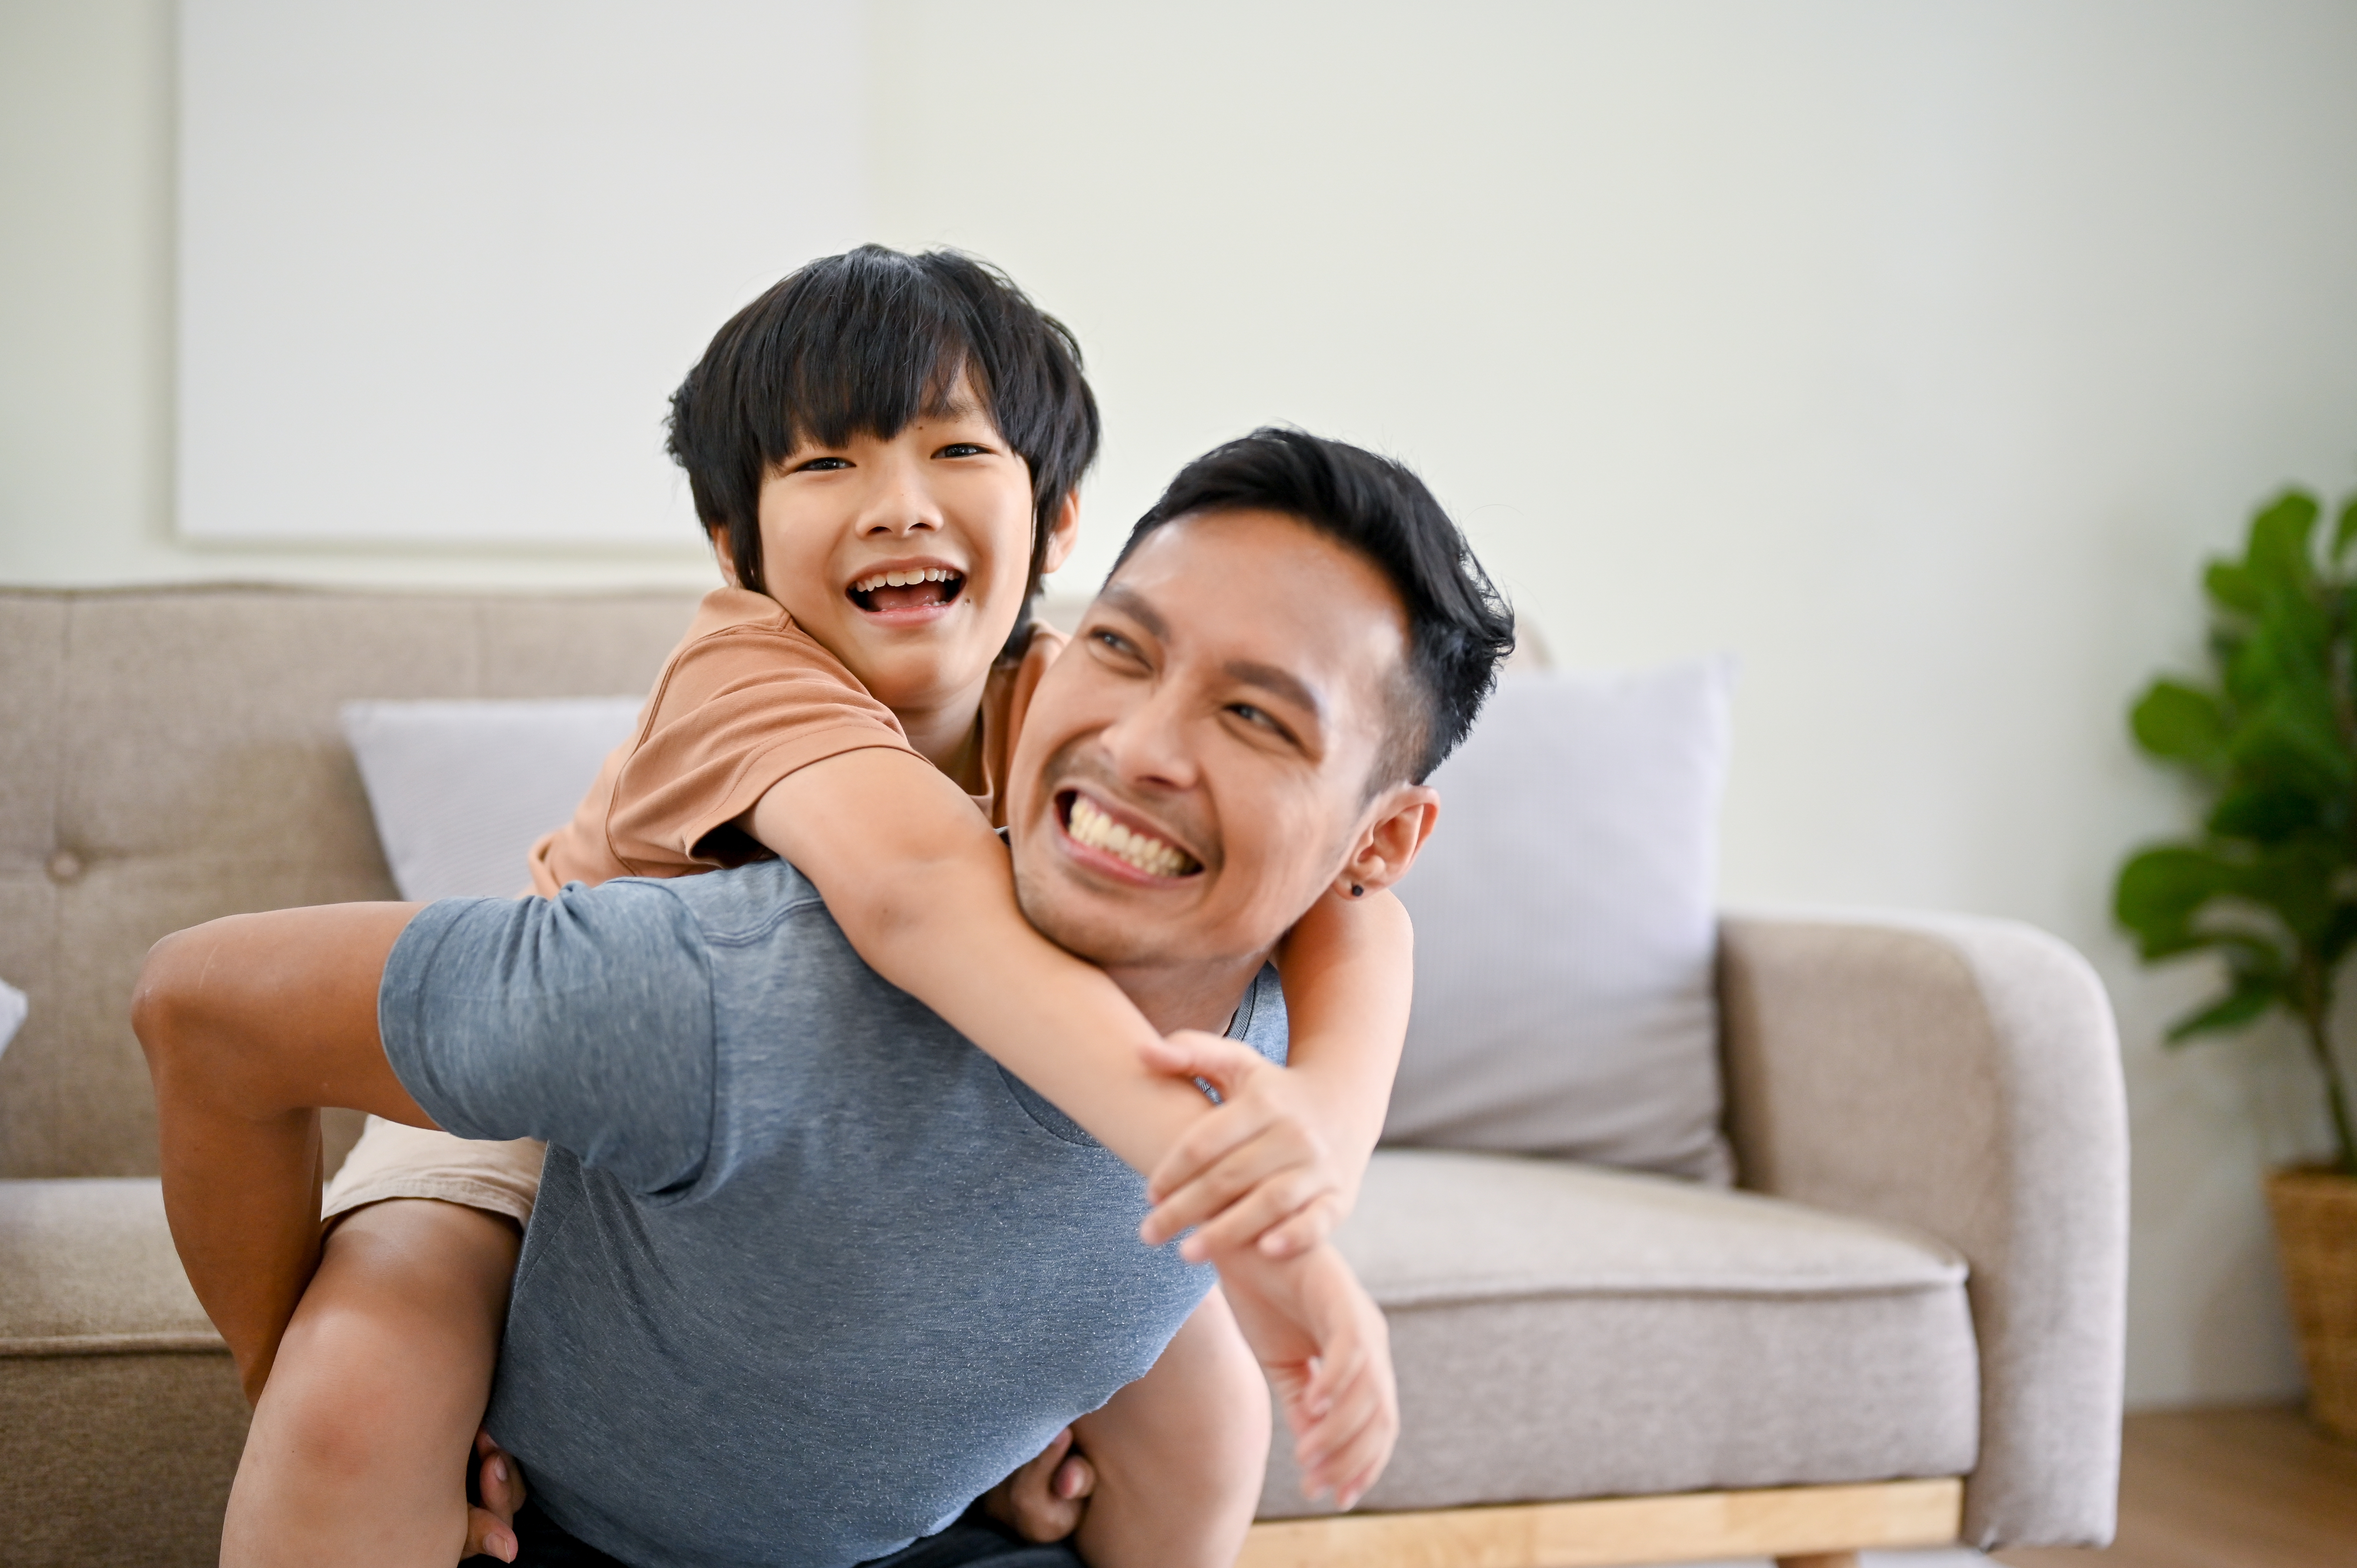 Asiatischer Sohn auf dem Rücken seines Vaters, lächelnd | Quelle: Shutterstock